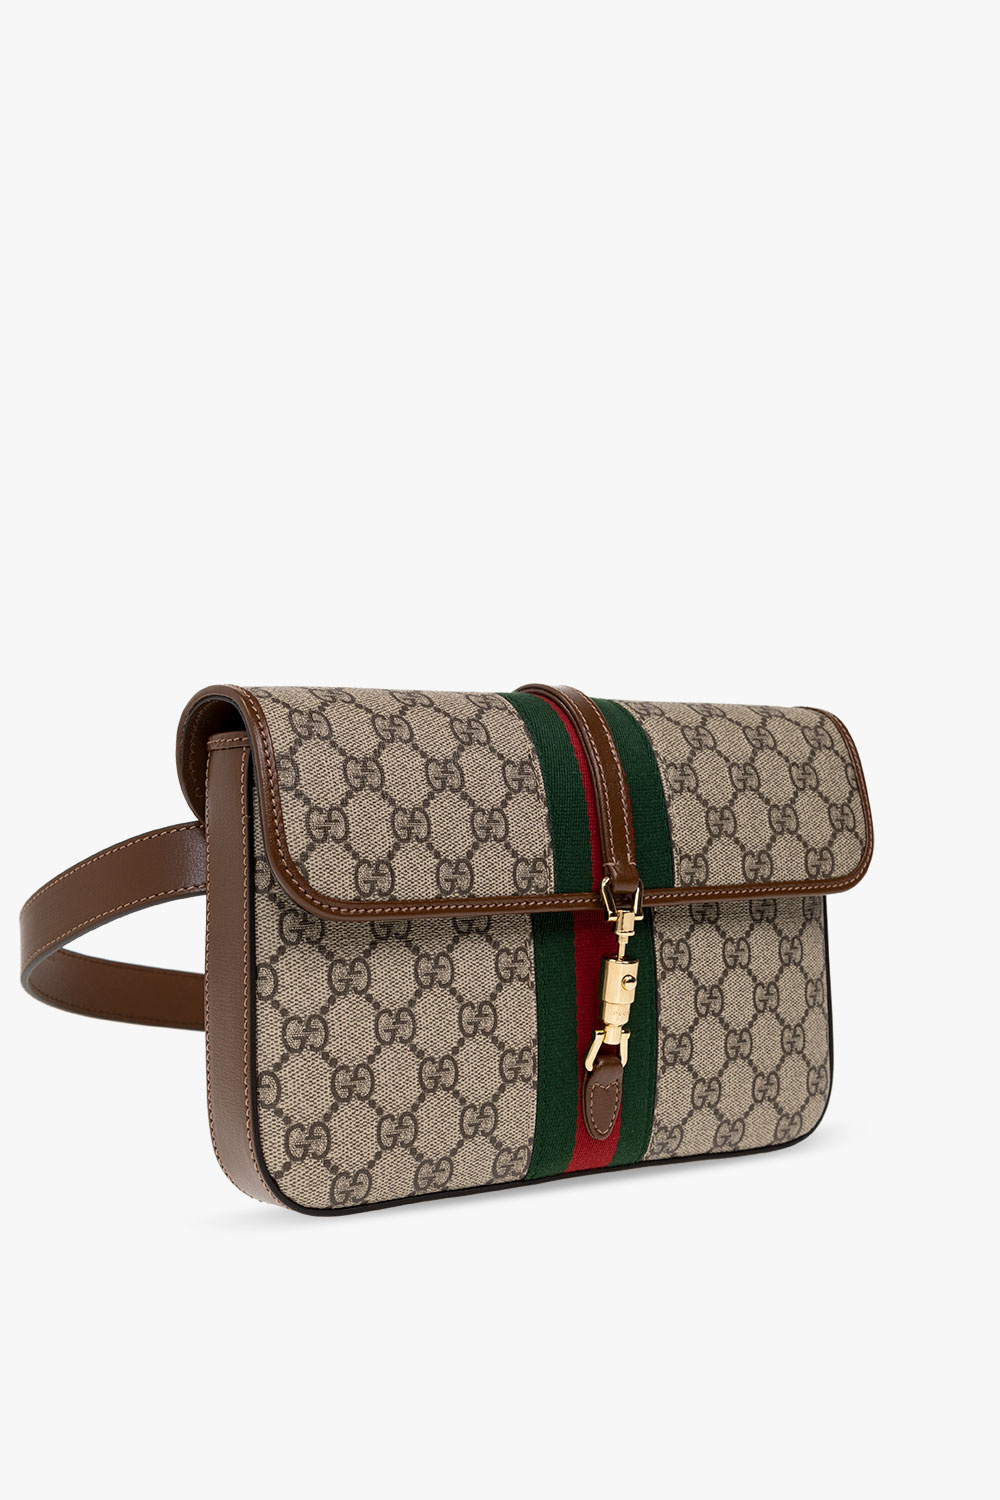 Gucci ‘Jackie 1961’ belt bag